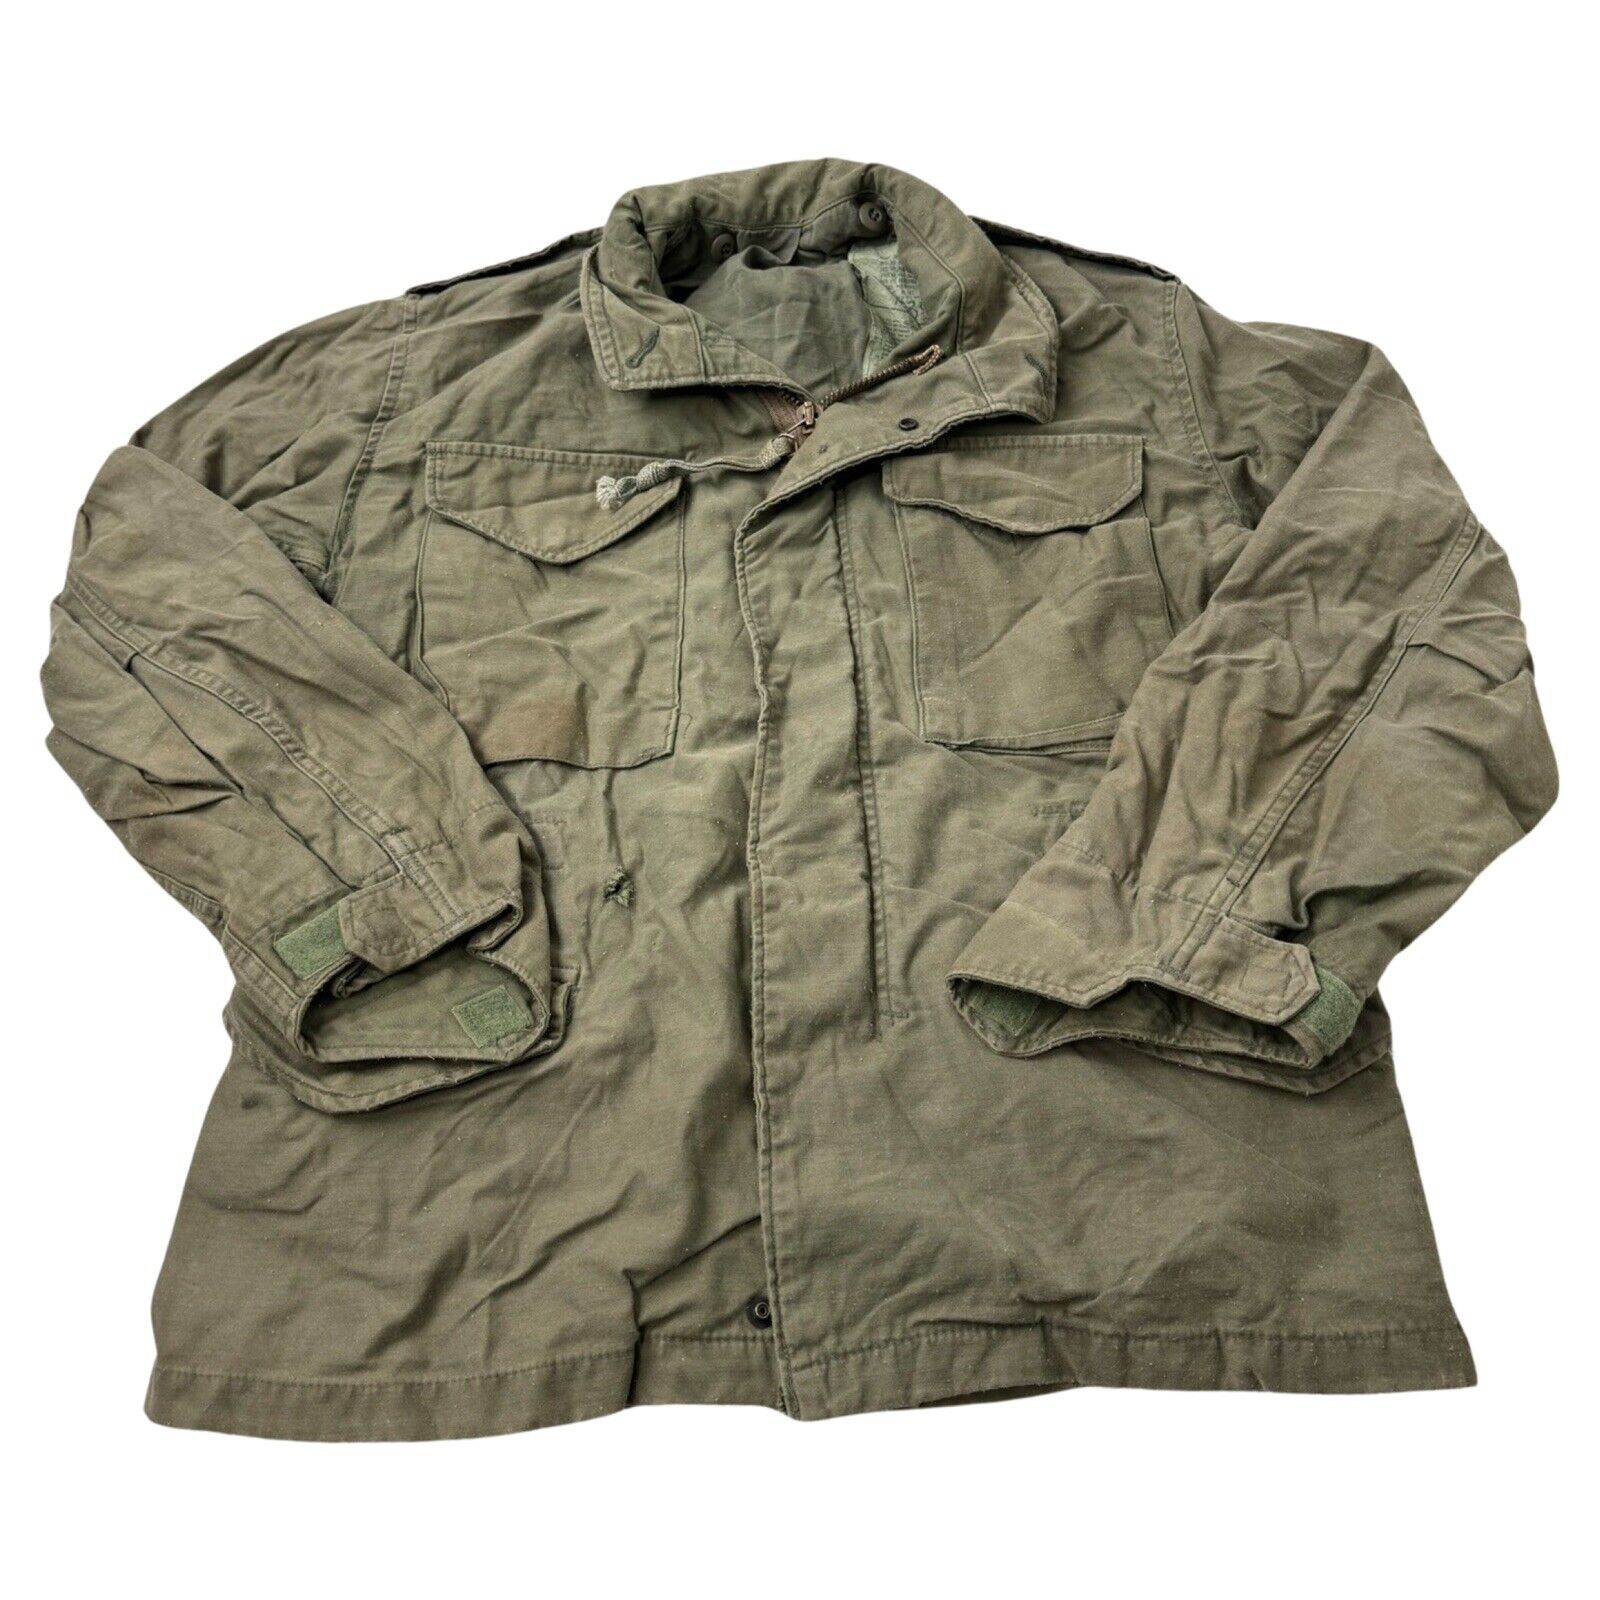 Coat, Cold Weather Field – Small Short OD Green OG-107 Vintage 1984